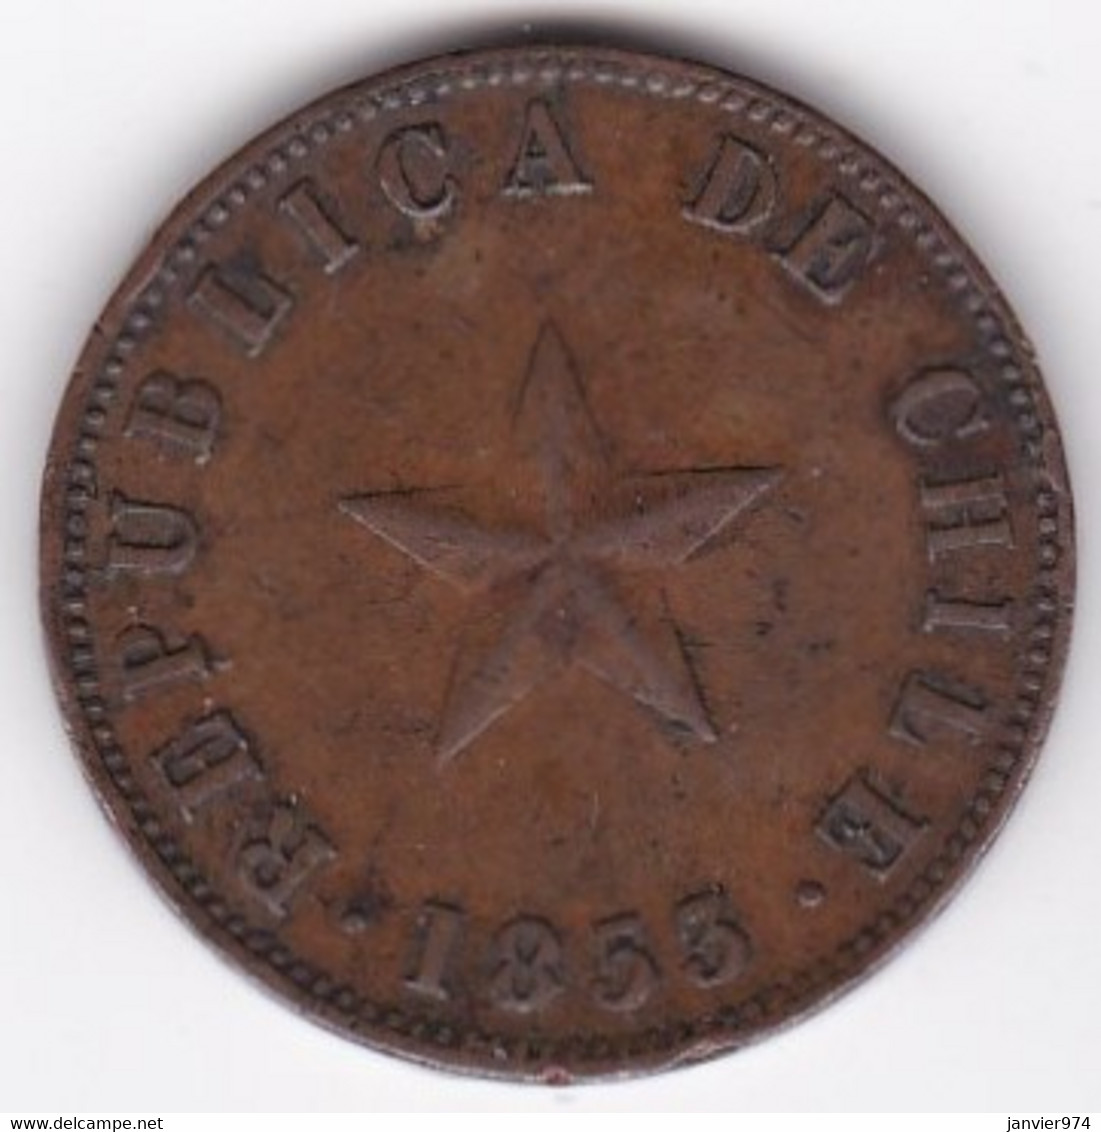 Chile. 1 Centavo 1853 . En Cuivre. KM# 127 - Cile